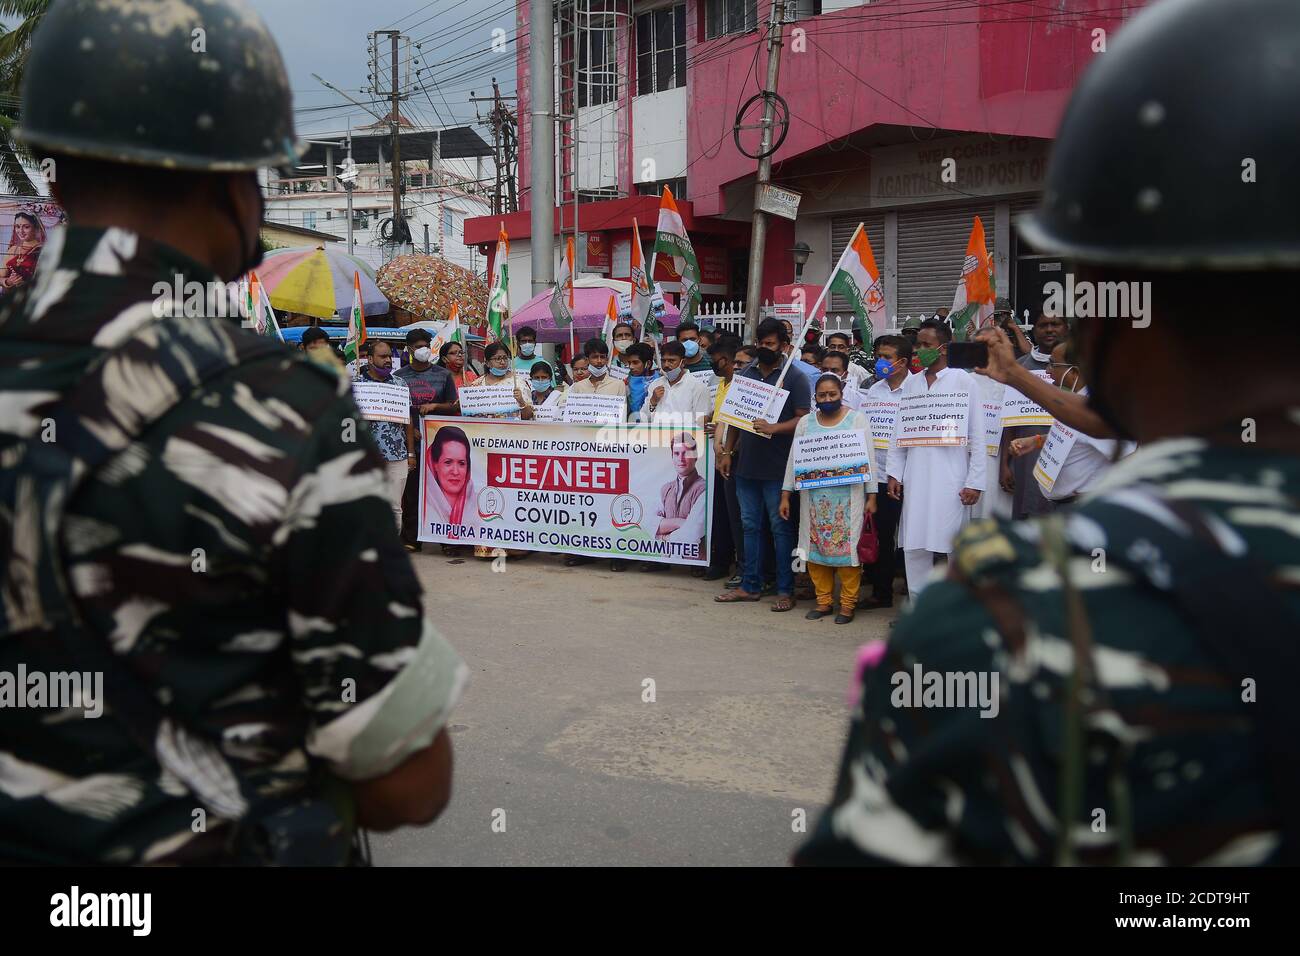 Los líderes y partidarios del Congreso de Tripura Pradesh están en protesta, solicitando posponer el examen JEE (examen conjunto) y el examen NEET (examen Nacional de Elegibilidad), debido a la COVID-19. Agartala, Tripura, India. Foto de stock